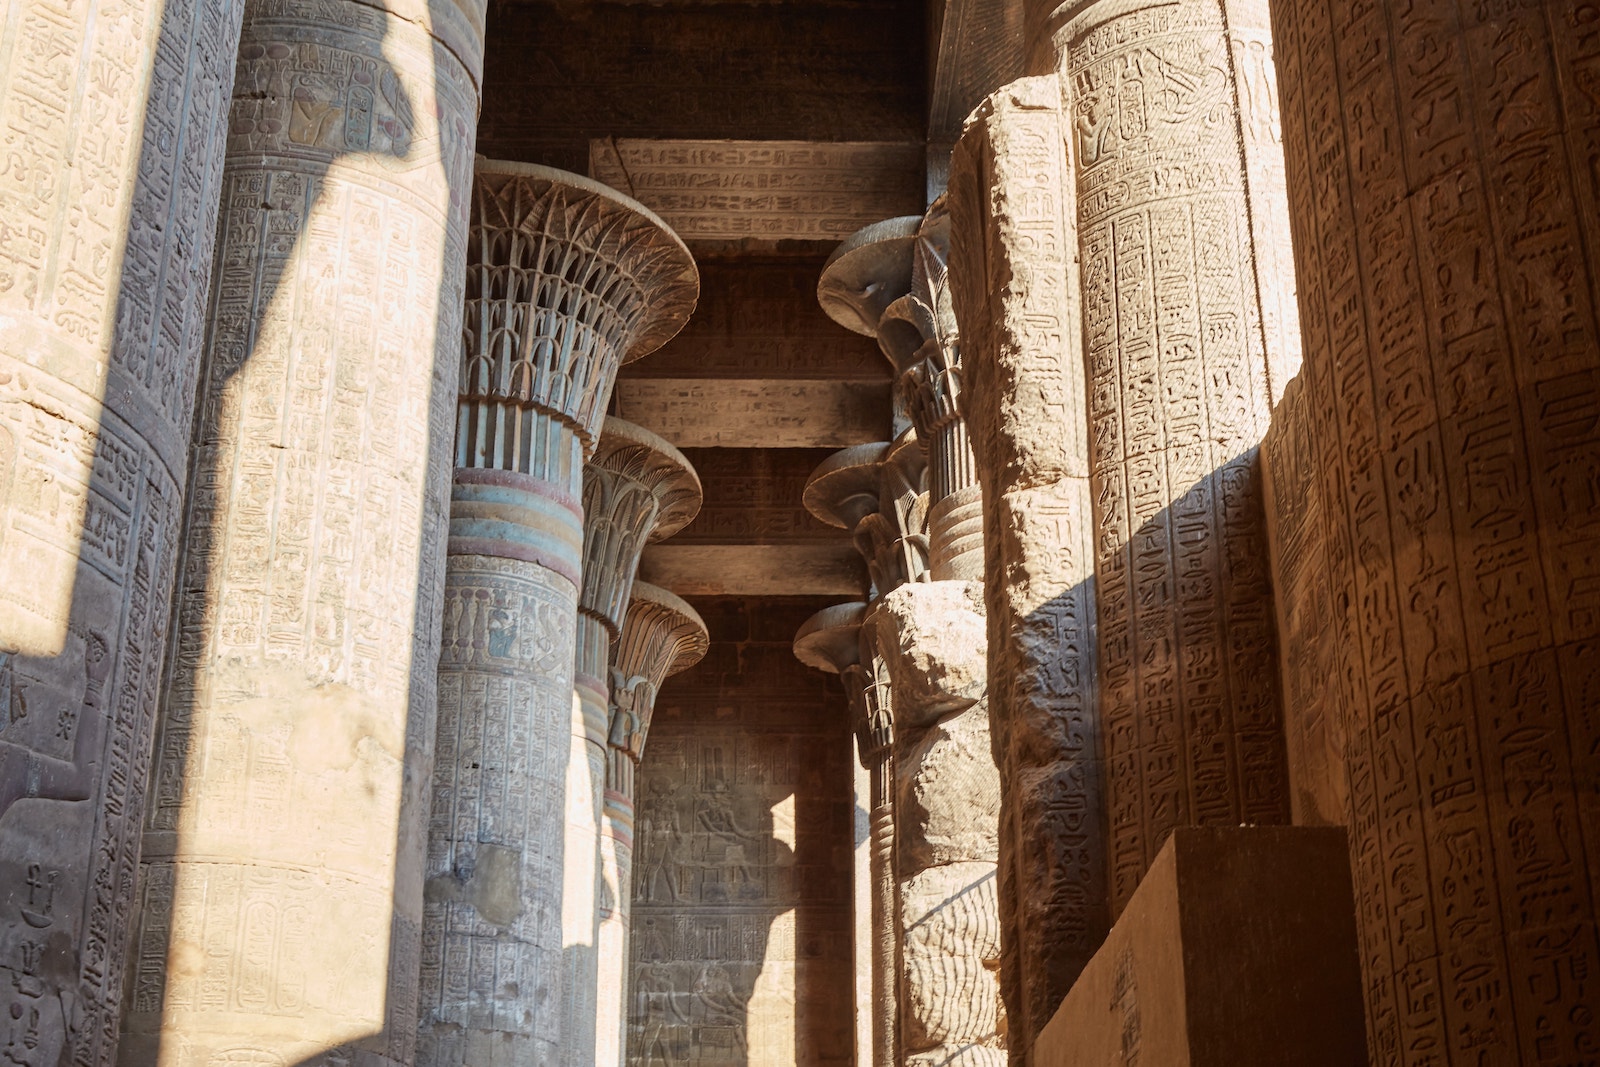 Esna Temple Egypt